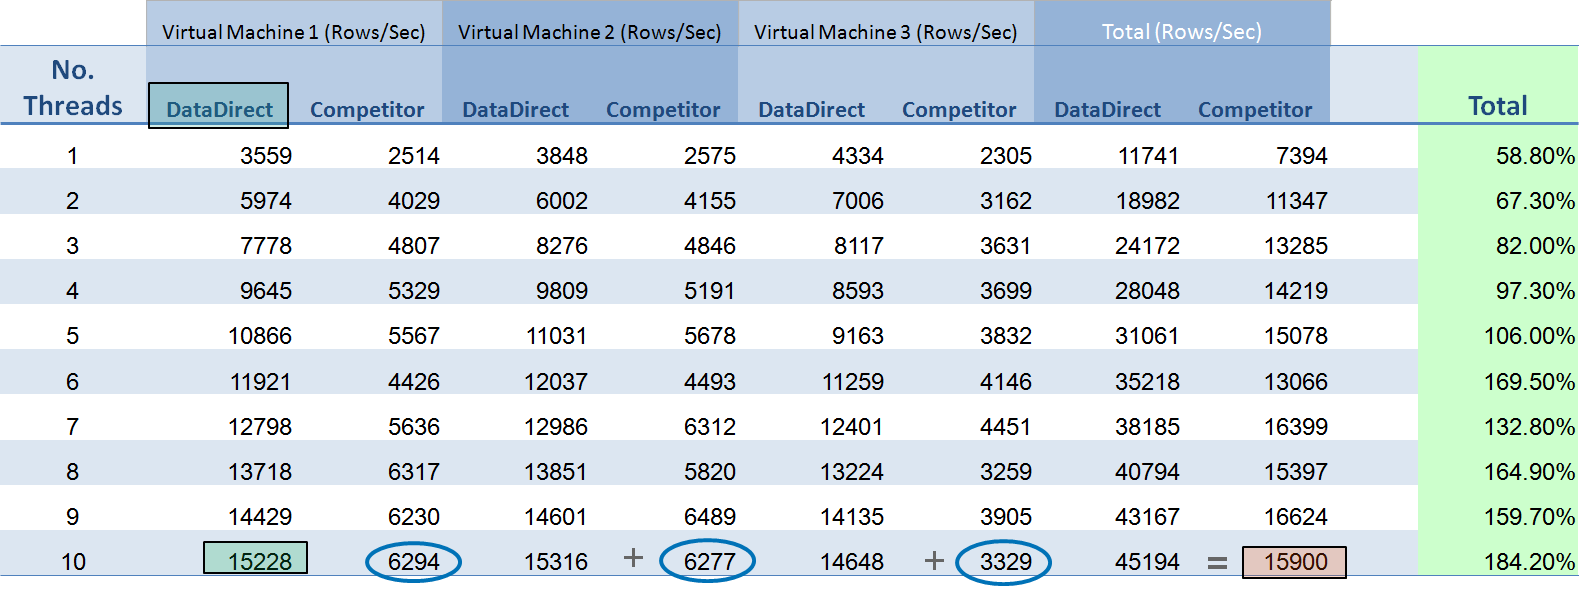 performance-comparison.png